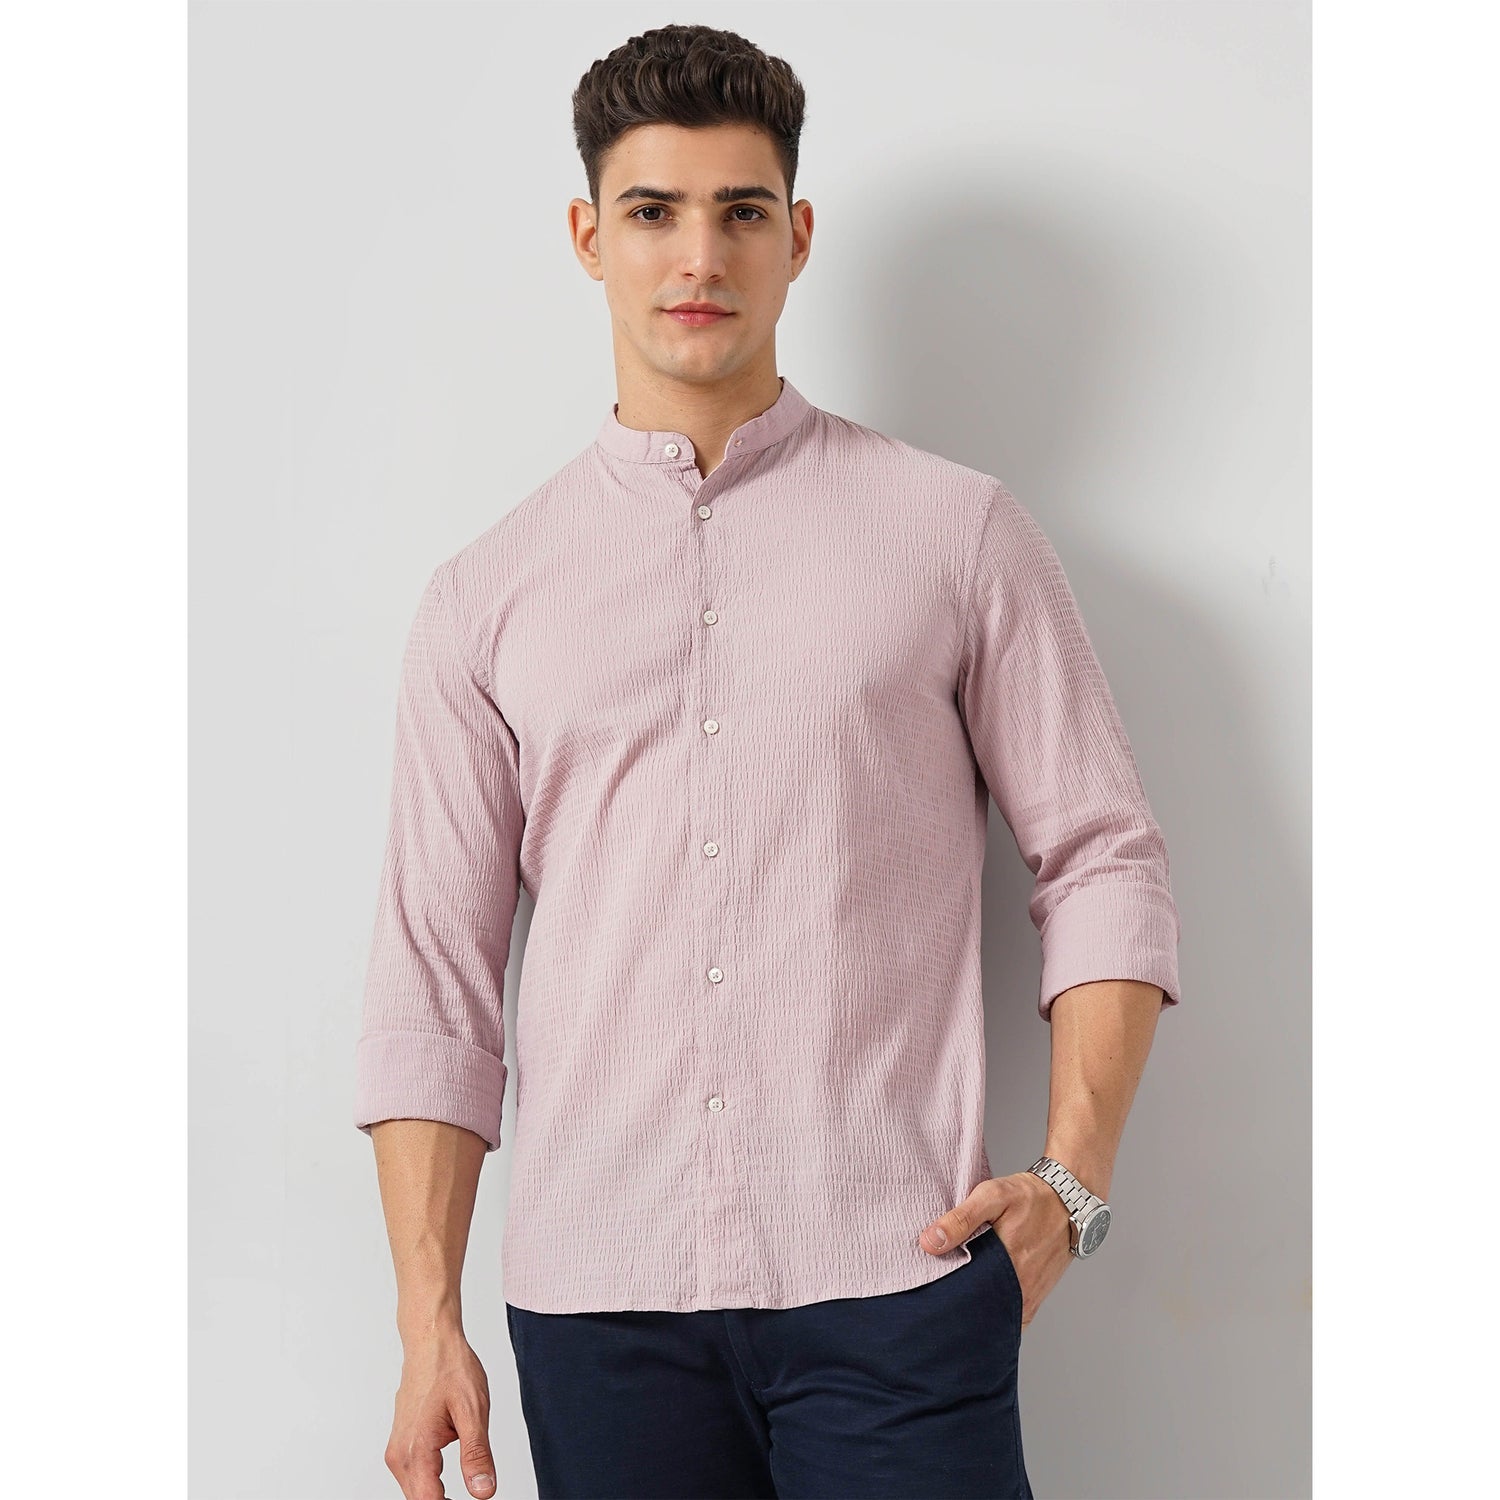 Solid Pink Cotton-Blend Shirt (FACOTSTRU)